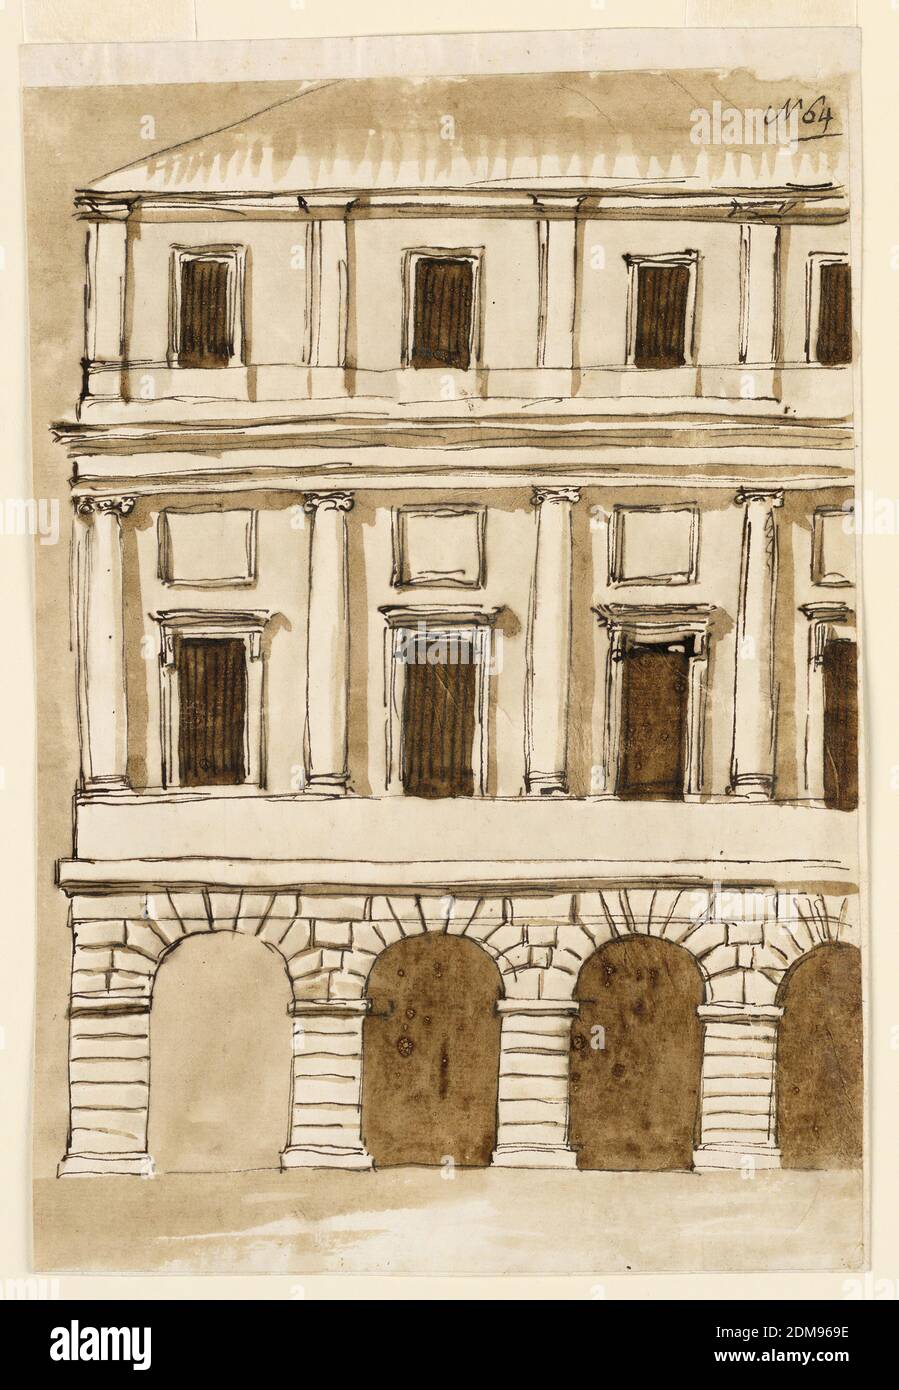 Erhebung eines Stadthauses, Giuseppe Barberi, italienisch, 1746–1809, Feder und braune Tusche, Pinsel und braune Wäsche auf liniertem, cremefarbenem Büttenpapier, EINE rustikale Kolonnade aus dreieinhalb Bögen befindet sich im Erdgeschoss. Der erste intercolumnar Raum ist ohne Wand in der Rückseite dargestellt. Es gibt zwei Aufträge. Zwischen den eingelassenen ionischen Säulen befinden sich Fenster unter geformten Quadraten. Im obersten Stockwerk sind Fenster zwischen Pilastern. Pyramidendach., Rom, Italien, ca. 1793-1794, Architektur, Zeichnung Stockfoto